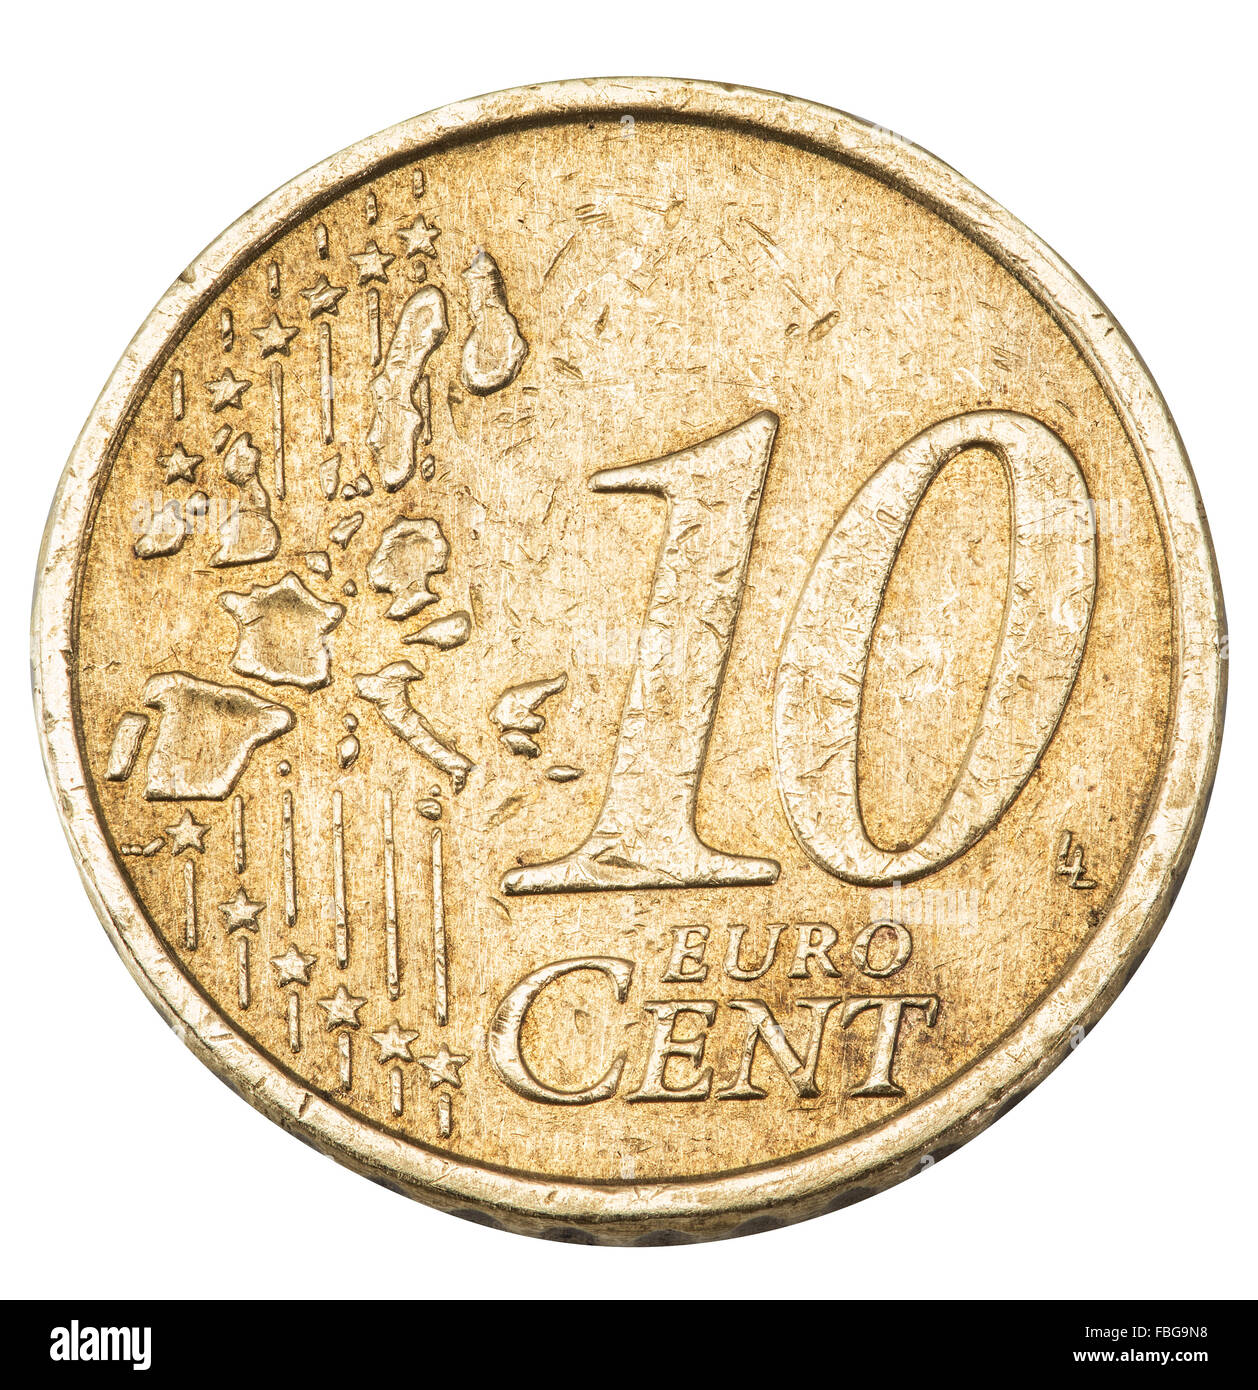 Vecchio dieci centesimi di euro moneta isolato su uno sfondo bianco. Il file contiene i tracciati di ritaglio. Foto Stock